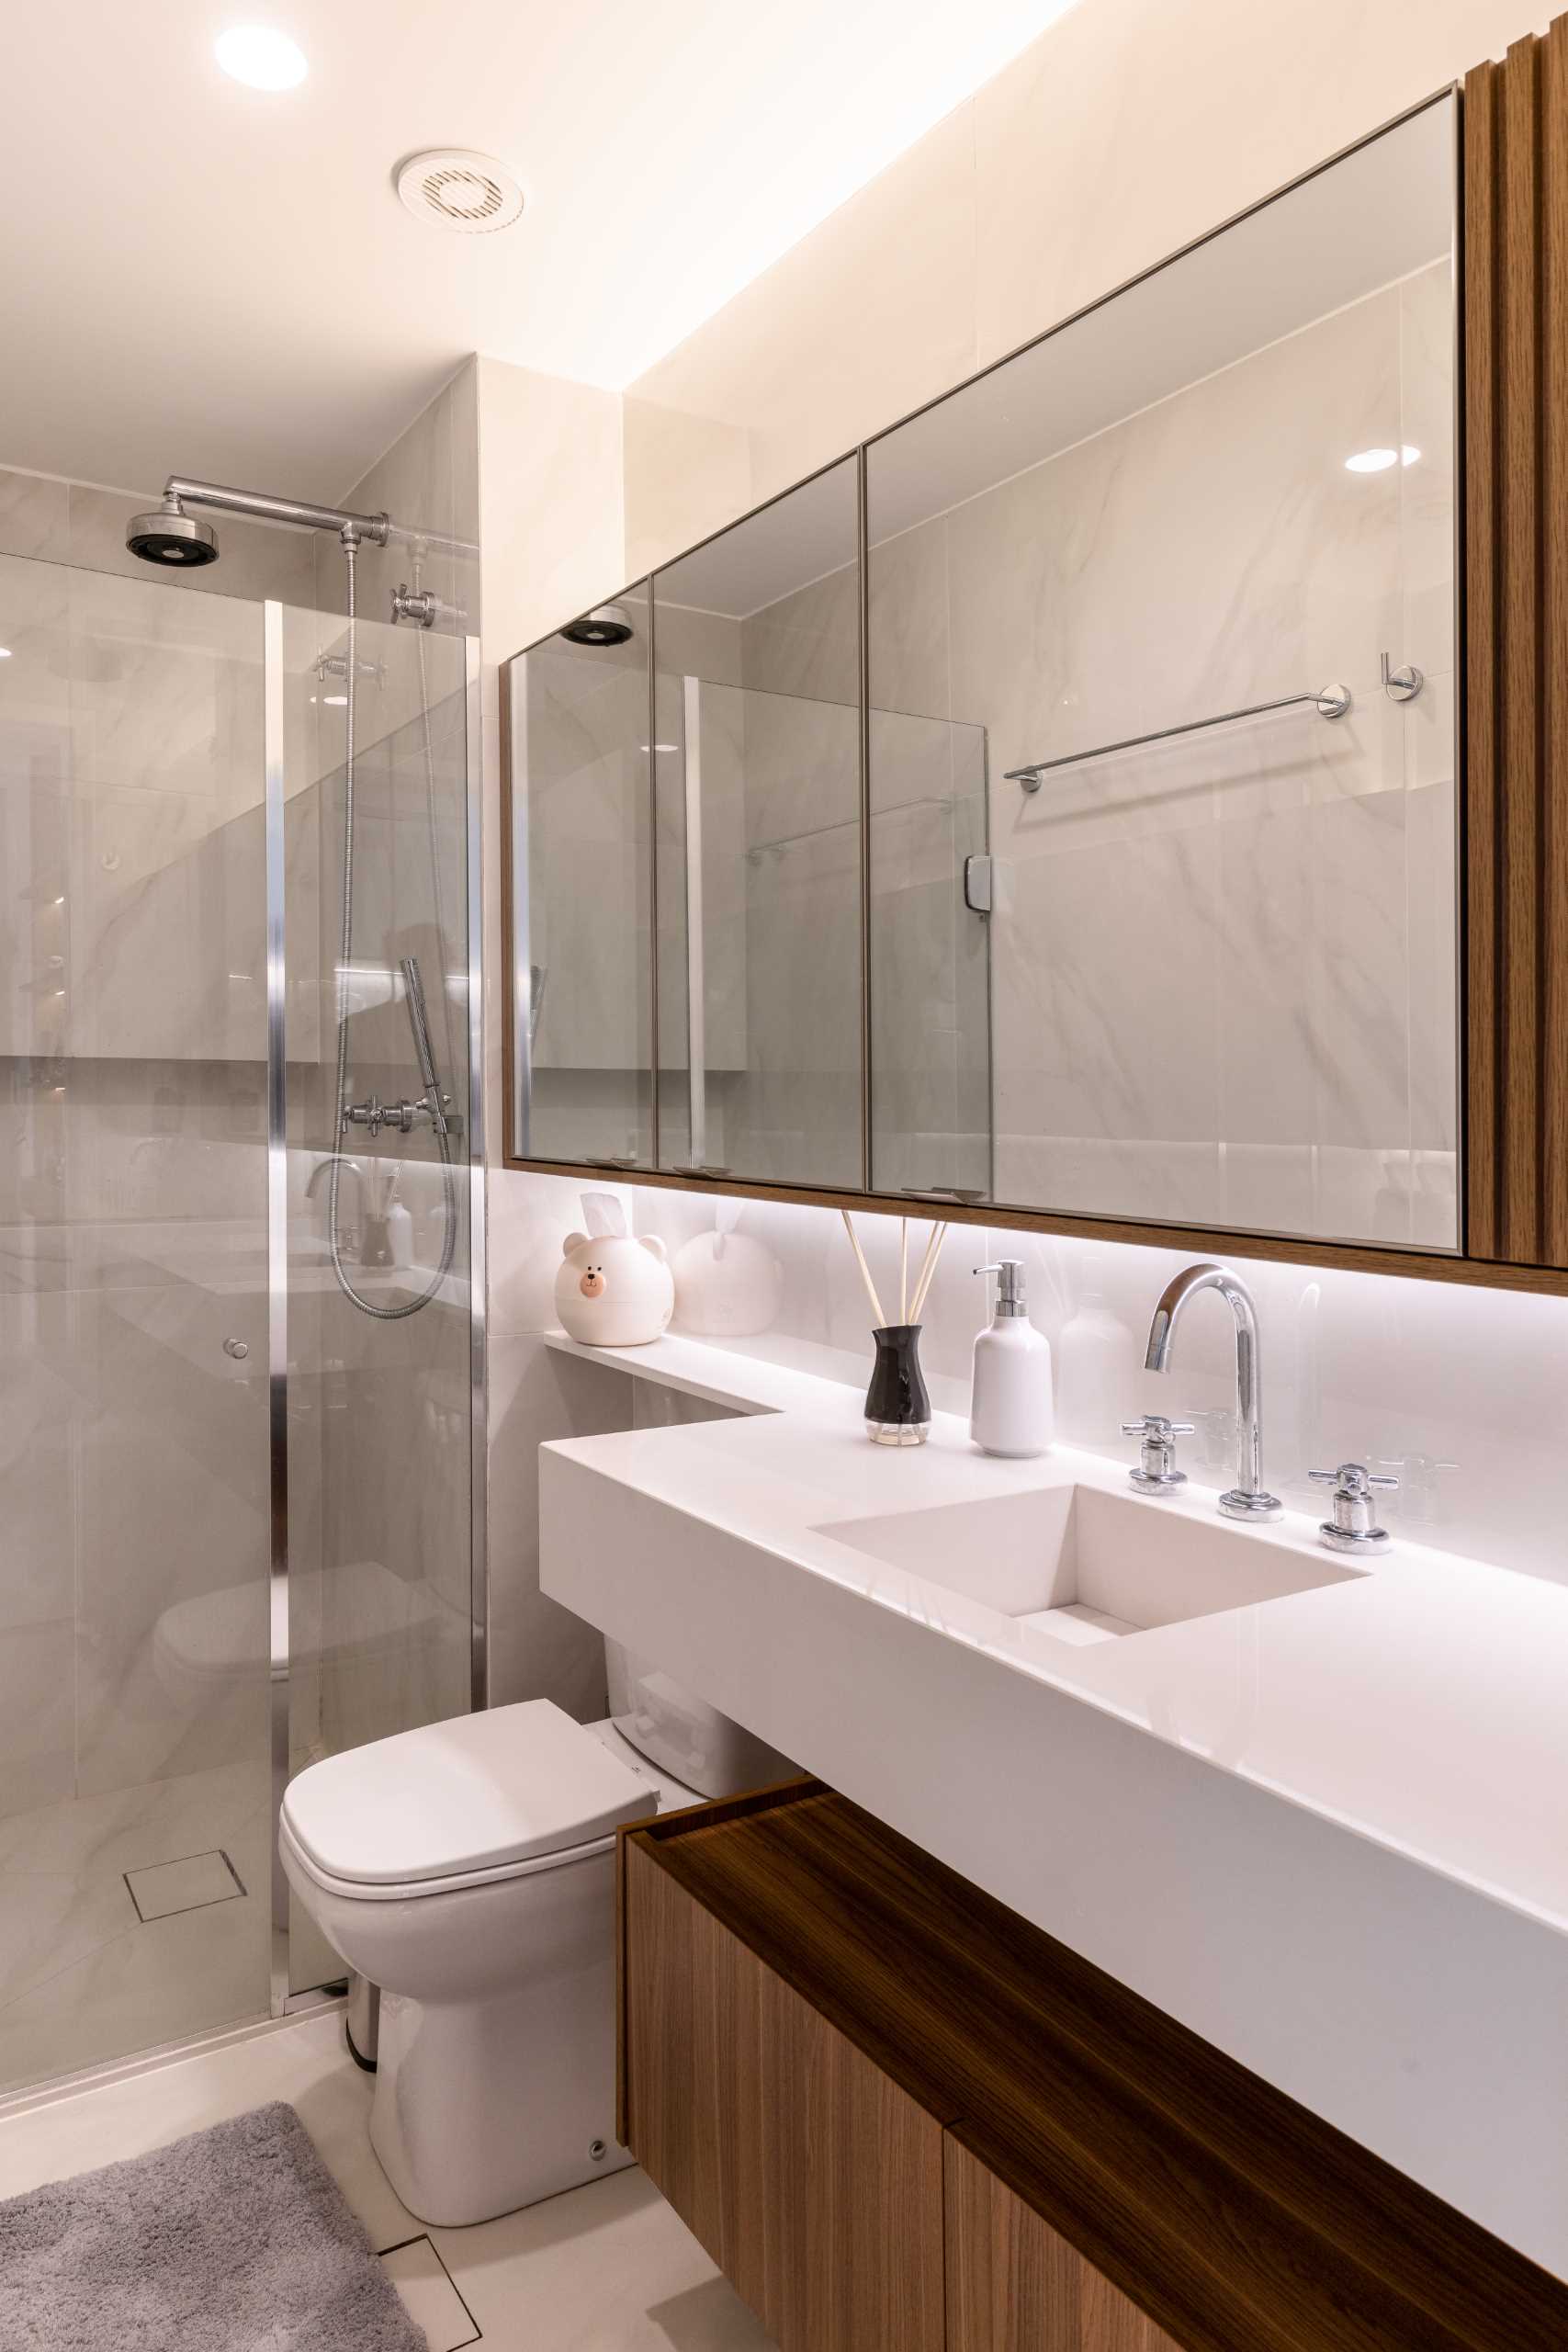 در حمام، یک کابینت چوبی پایین‌تر، یک روشویی با سینک توکار، و یک دوش روشویی وجود دارد.